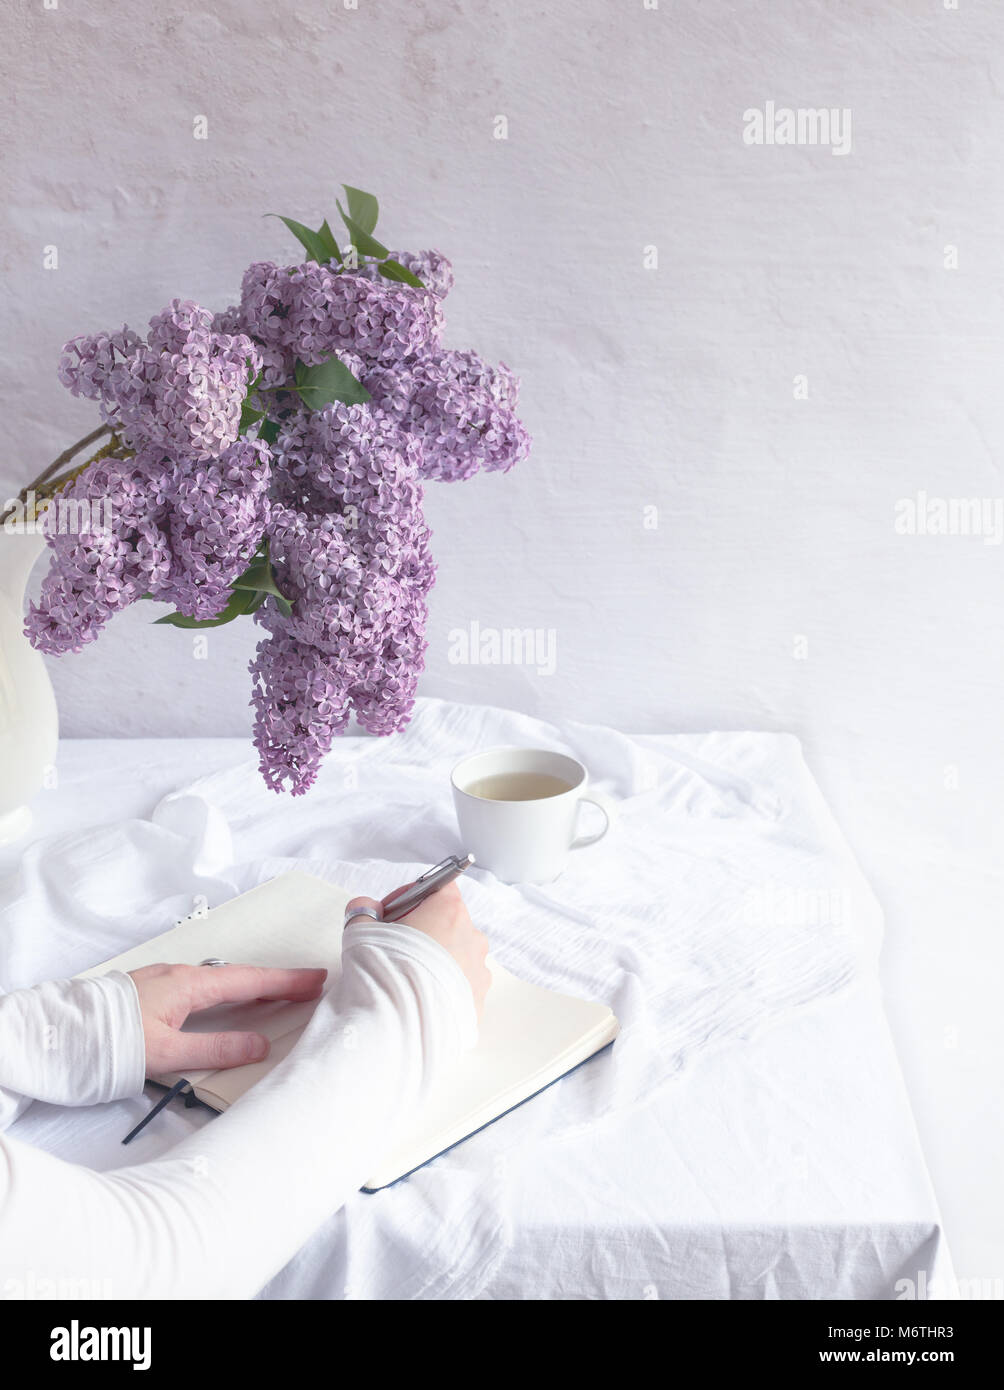 Innen- Szene mit Tisch mit weißer Bettwäsche, Bündel von frischem lila Blumen, Teetasse, Hände auf dem Notebook, eine Hand schreiben Stockfoto